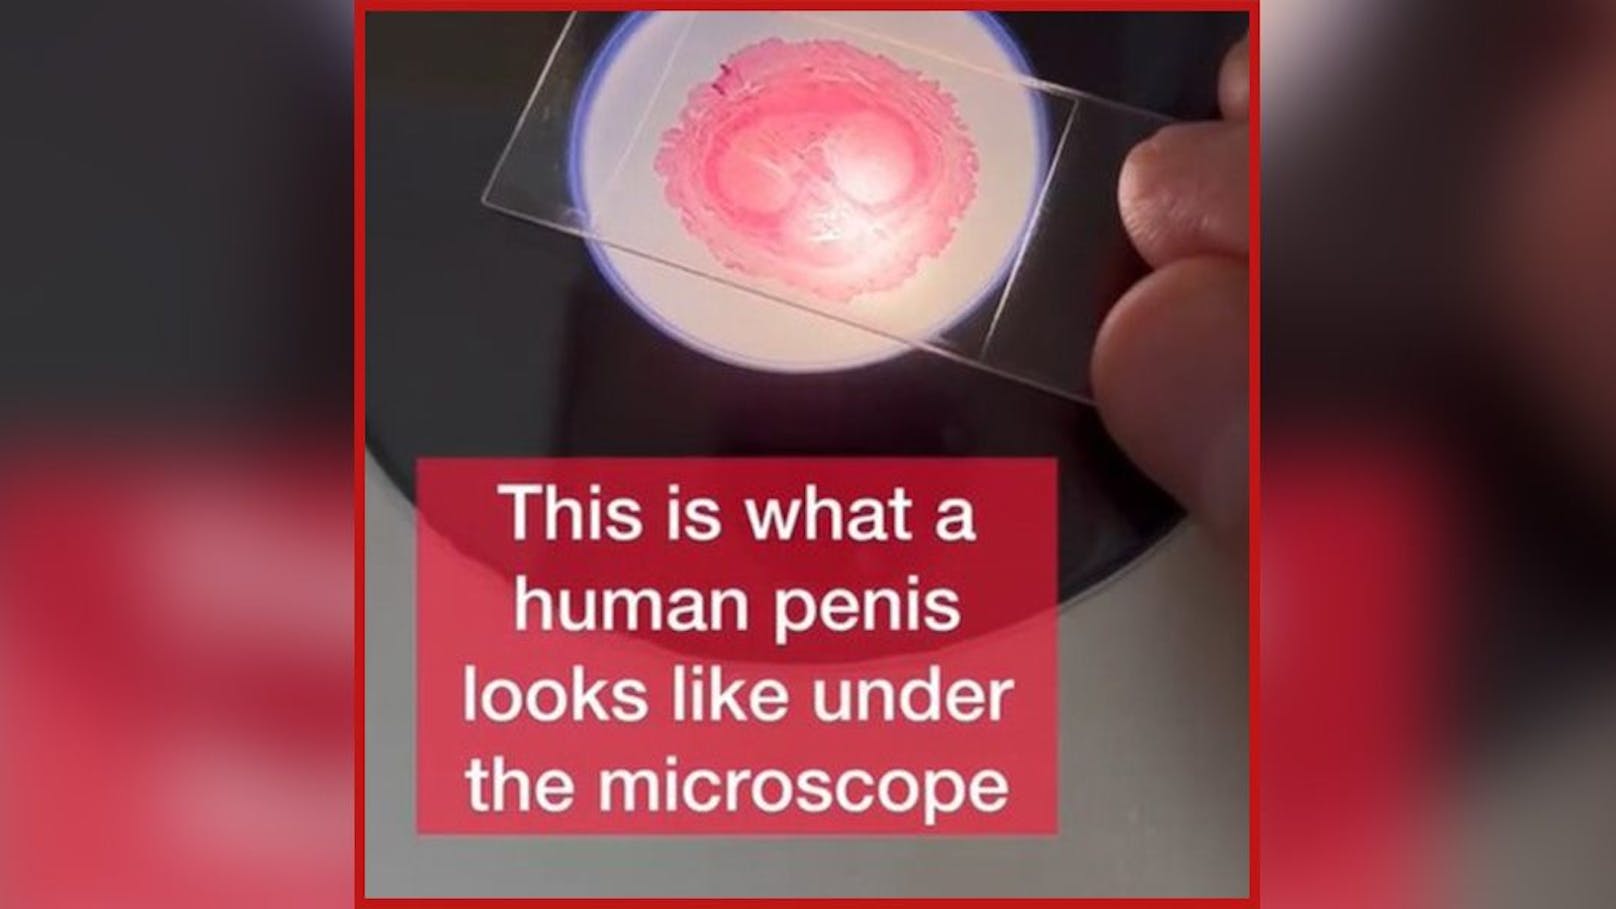 So sieht eine Scheibe Penis unter dem Mikroskop aus